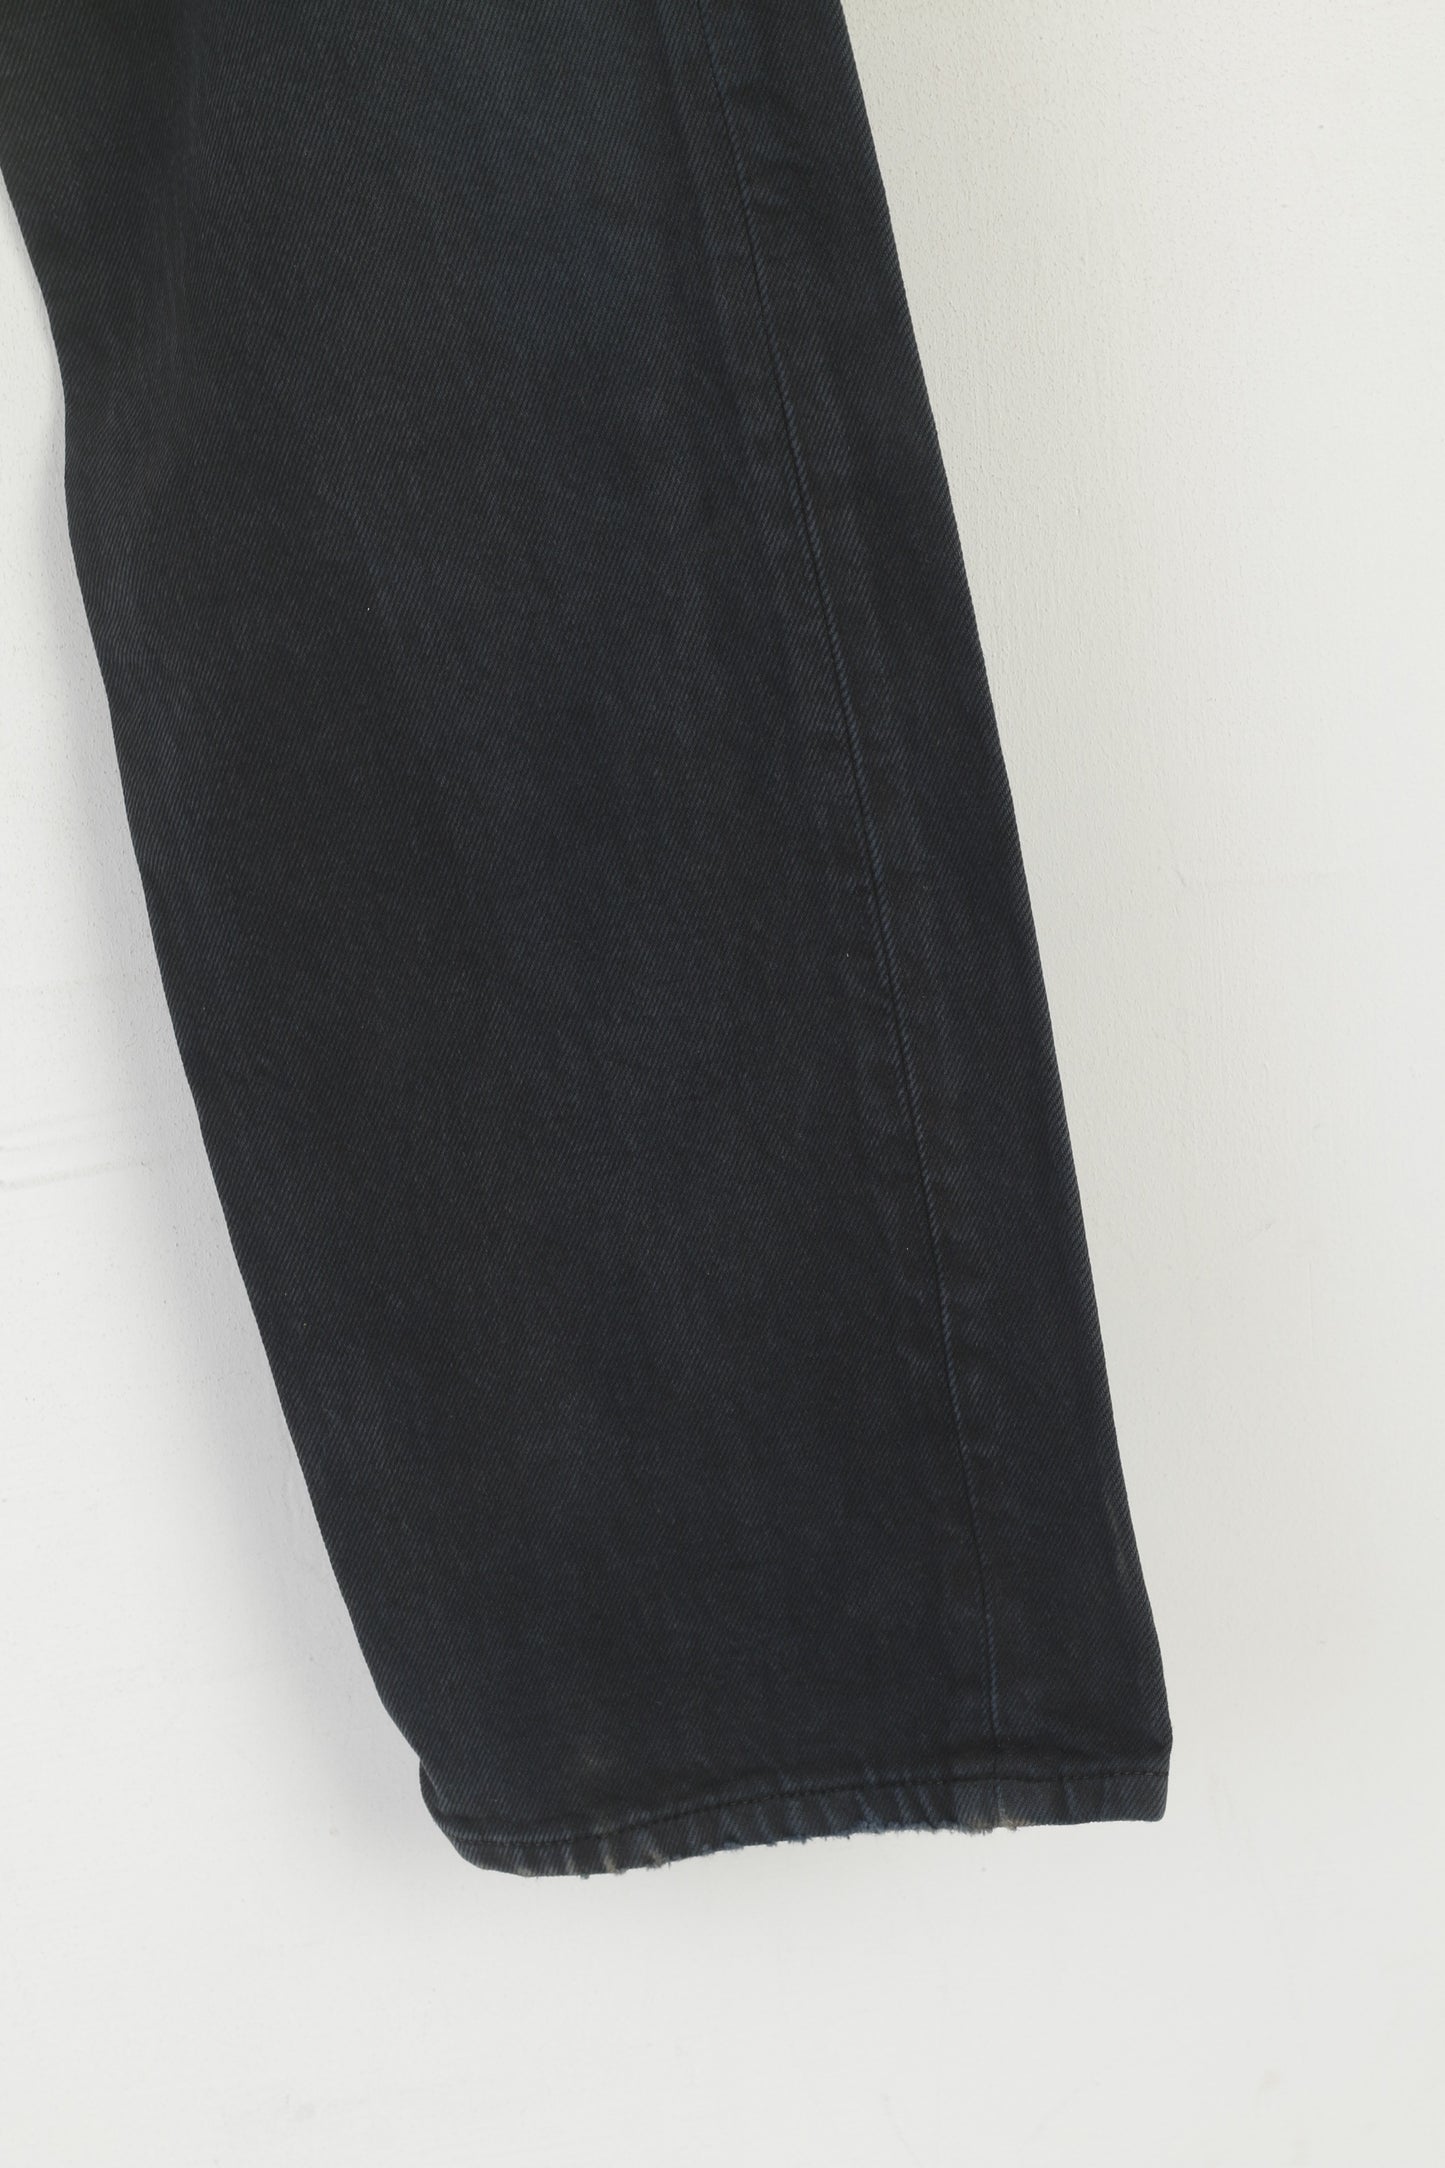 Levi's 501 Women 32 Jeans Trousers Navy Cotton Vintage Straight Denim Pants